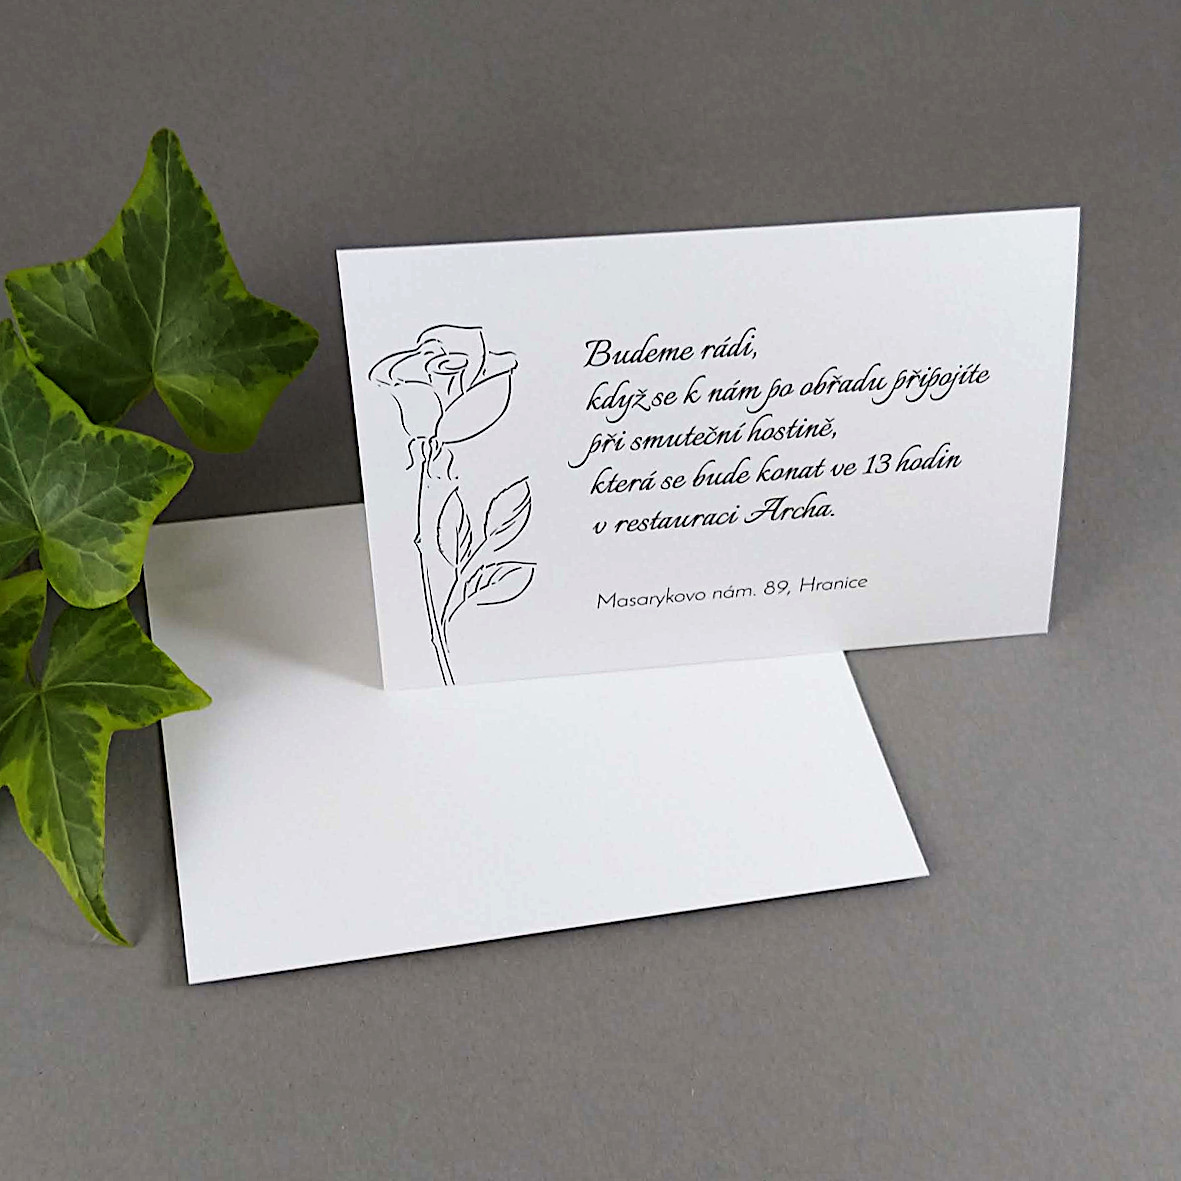 Pozvánka, informační karta – s motivem jednoduché černobílé růže, formát 100 × 70 mm, jednostranná